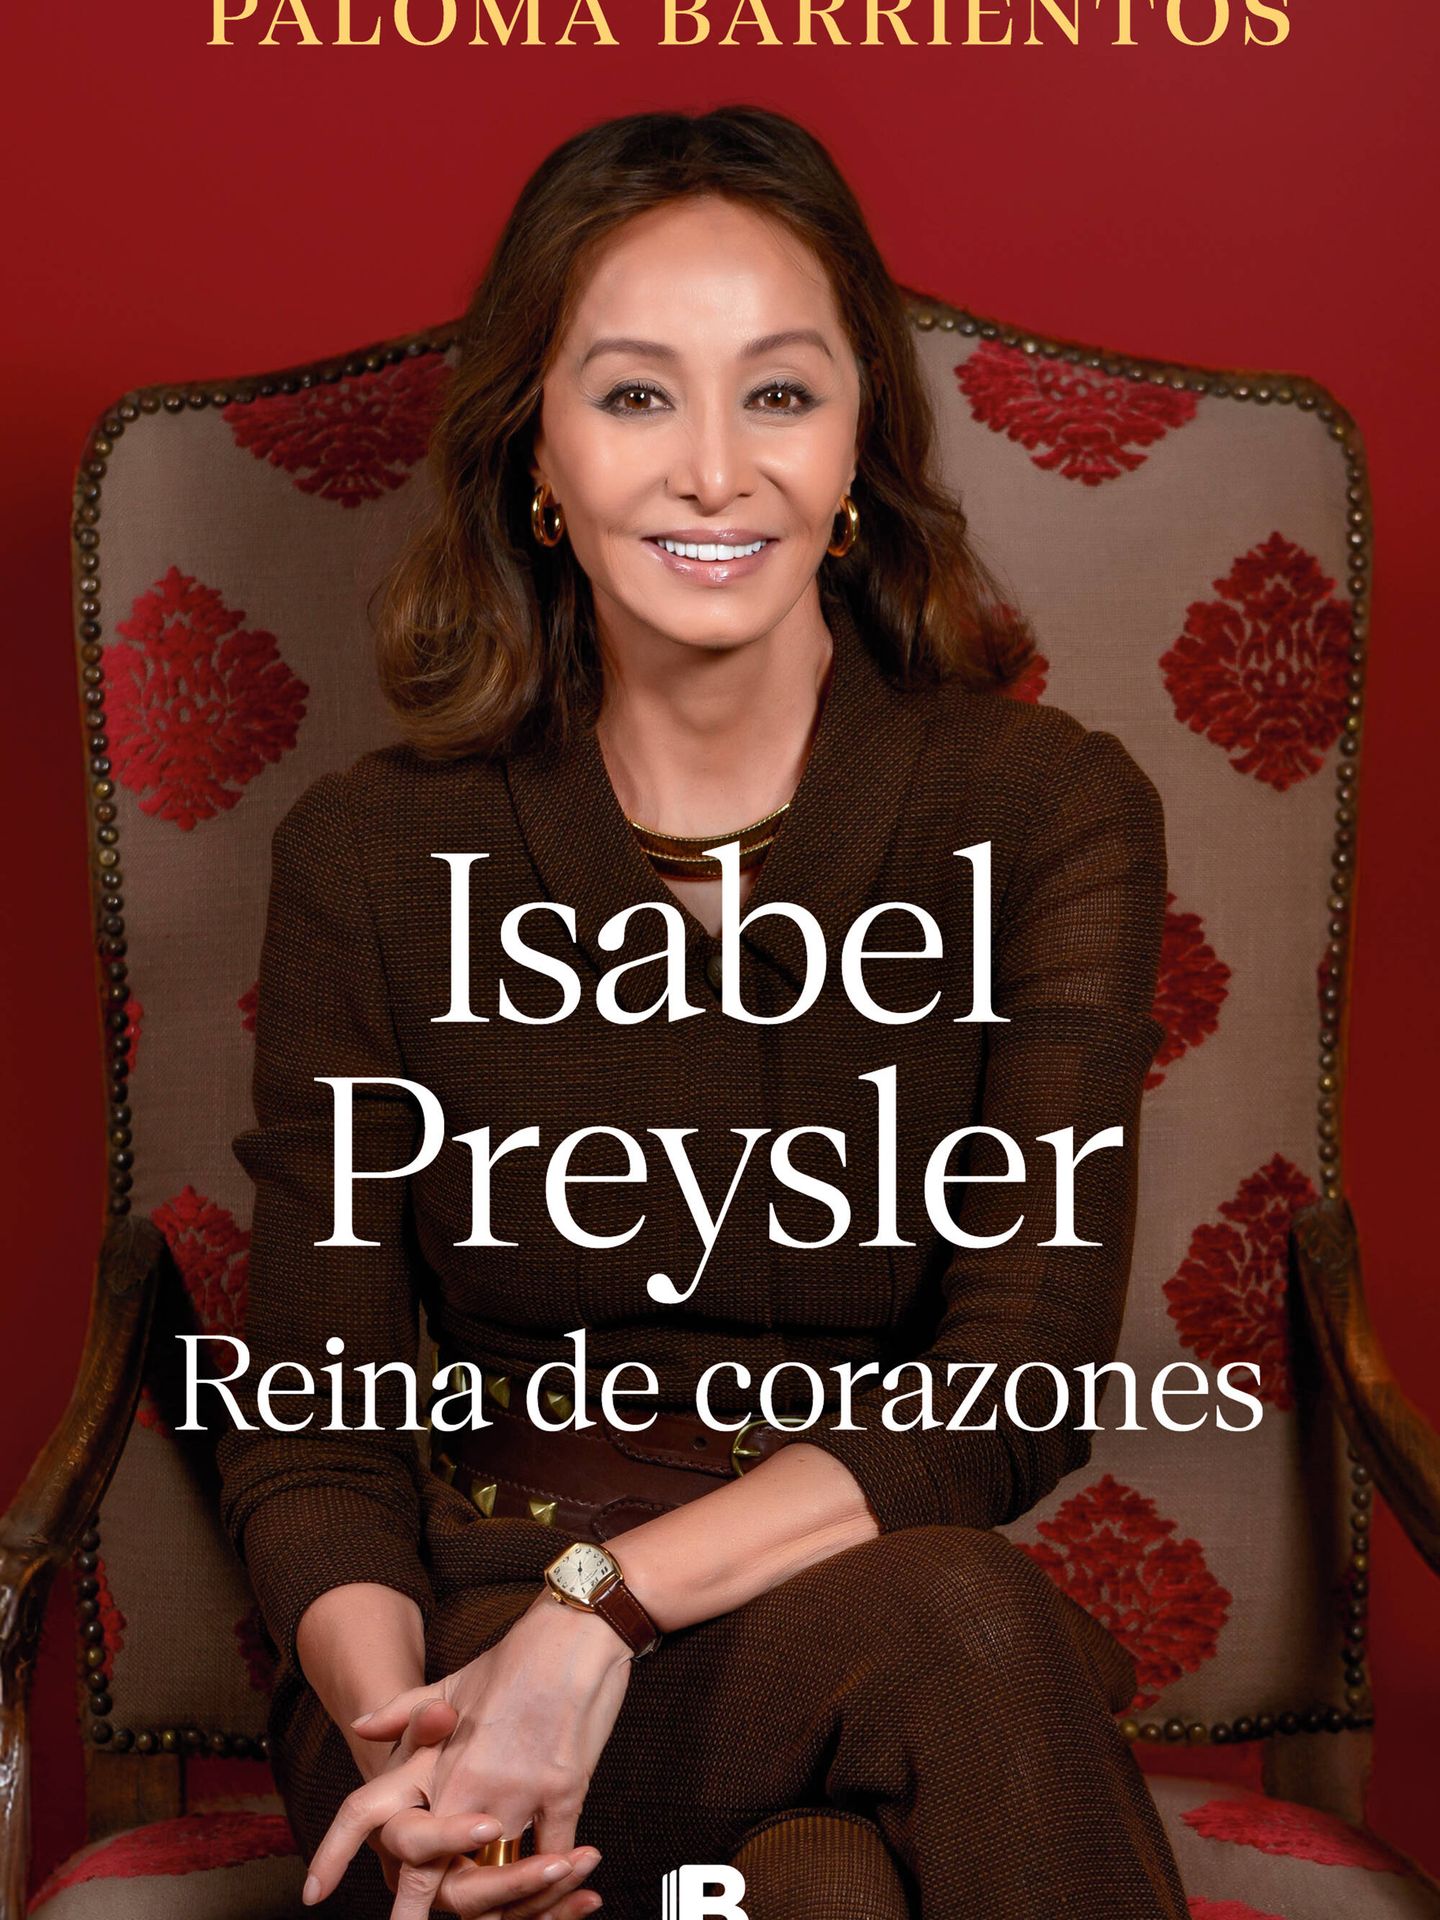 Porta de la biografía de Preysler escrita por Paloma Barrientos. (Ediciones B)